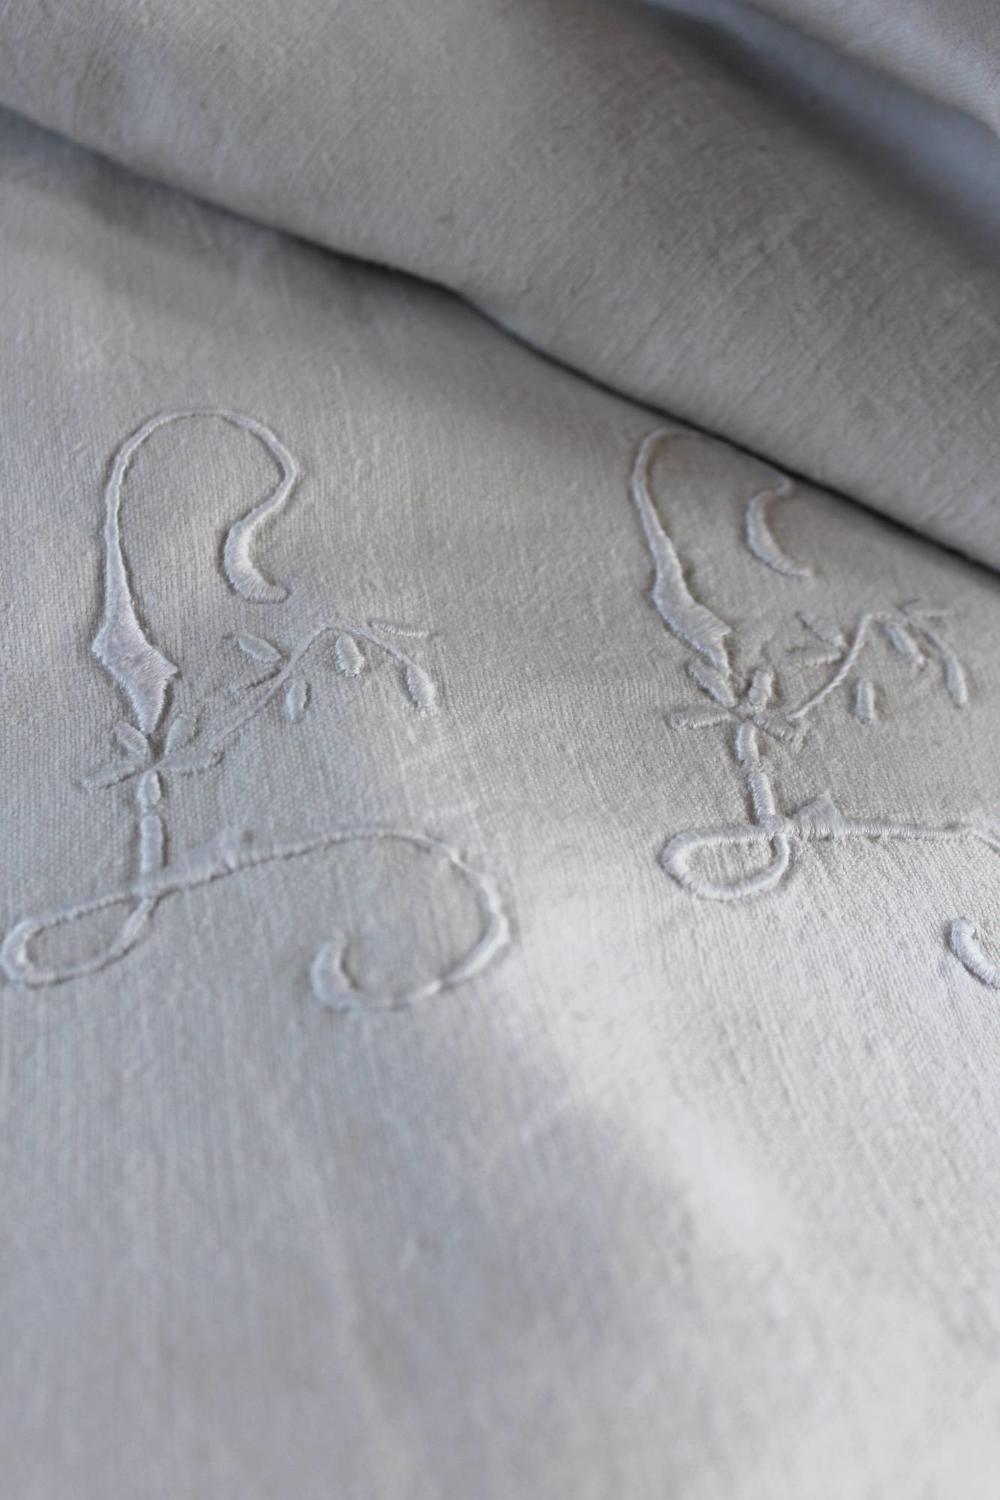 Antique French Monogrammed Linen / Hemp Sheet